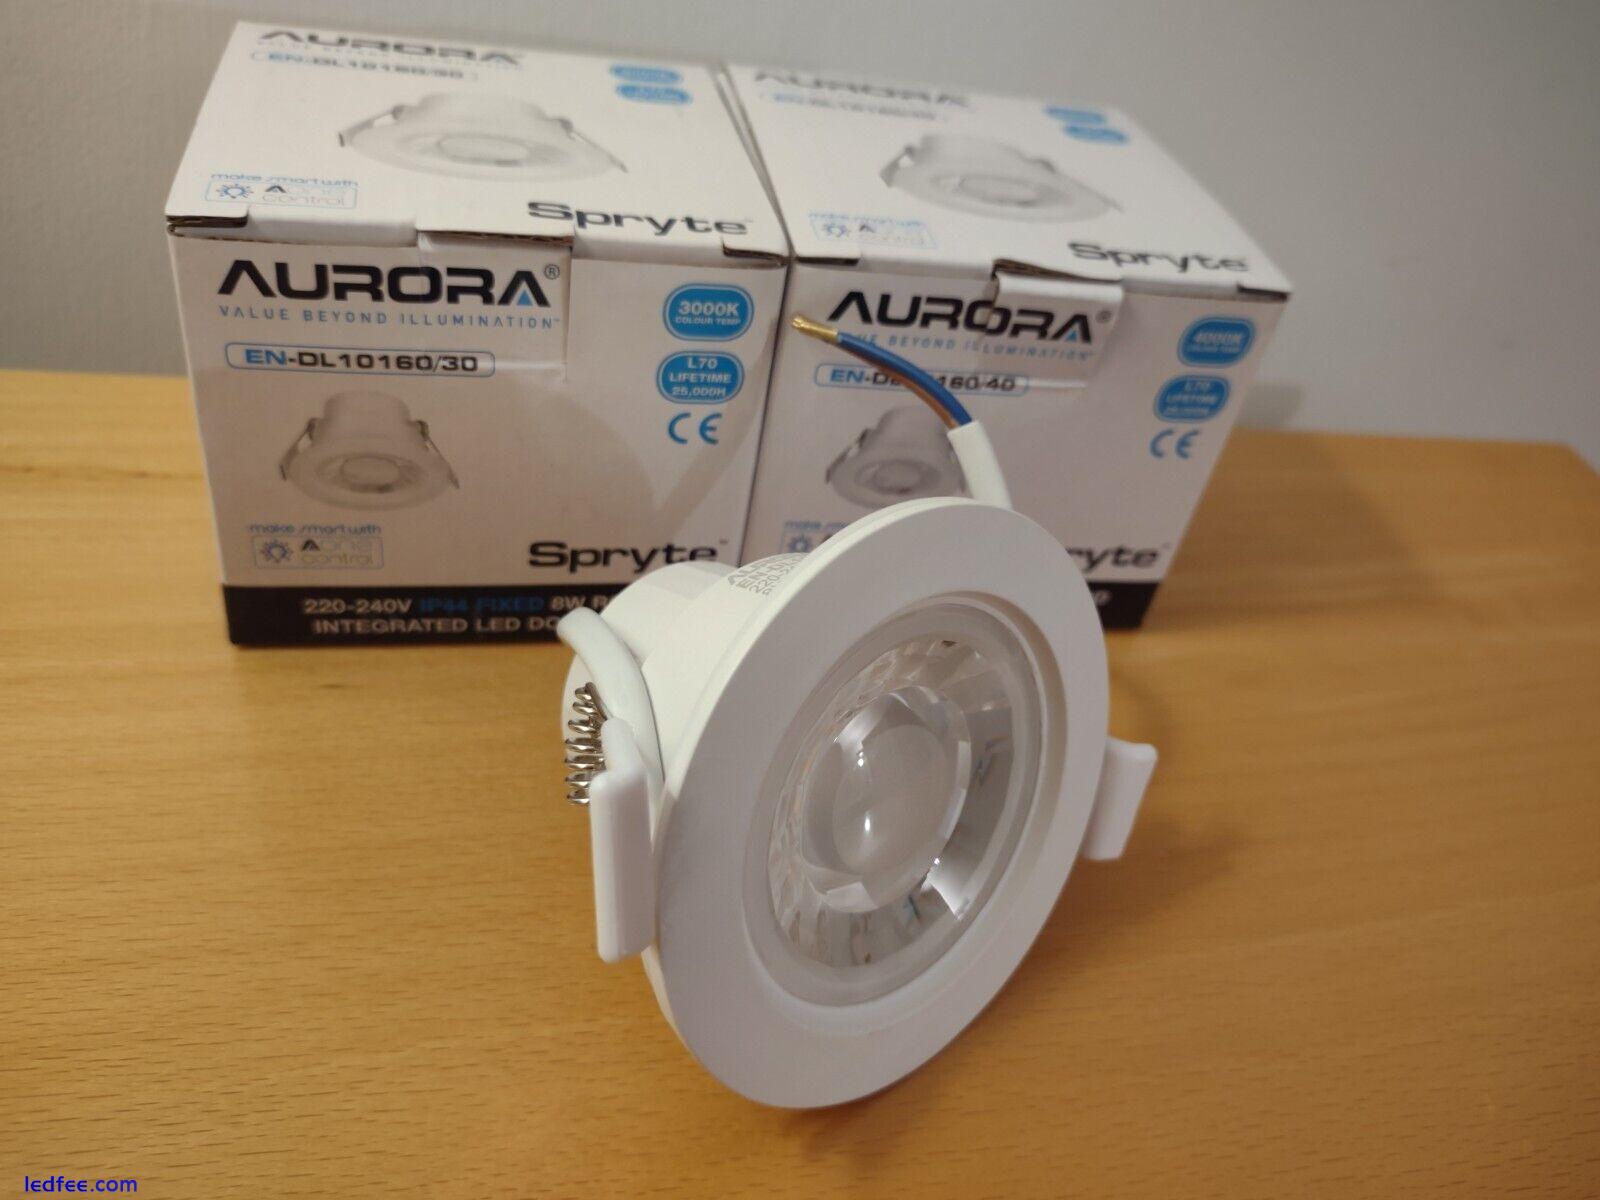 20x Pack 8W LED Downlight Cool White 4000 Aurora Enlite Spryte 240v Ceiling Spot 0 